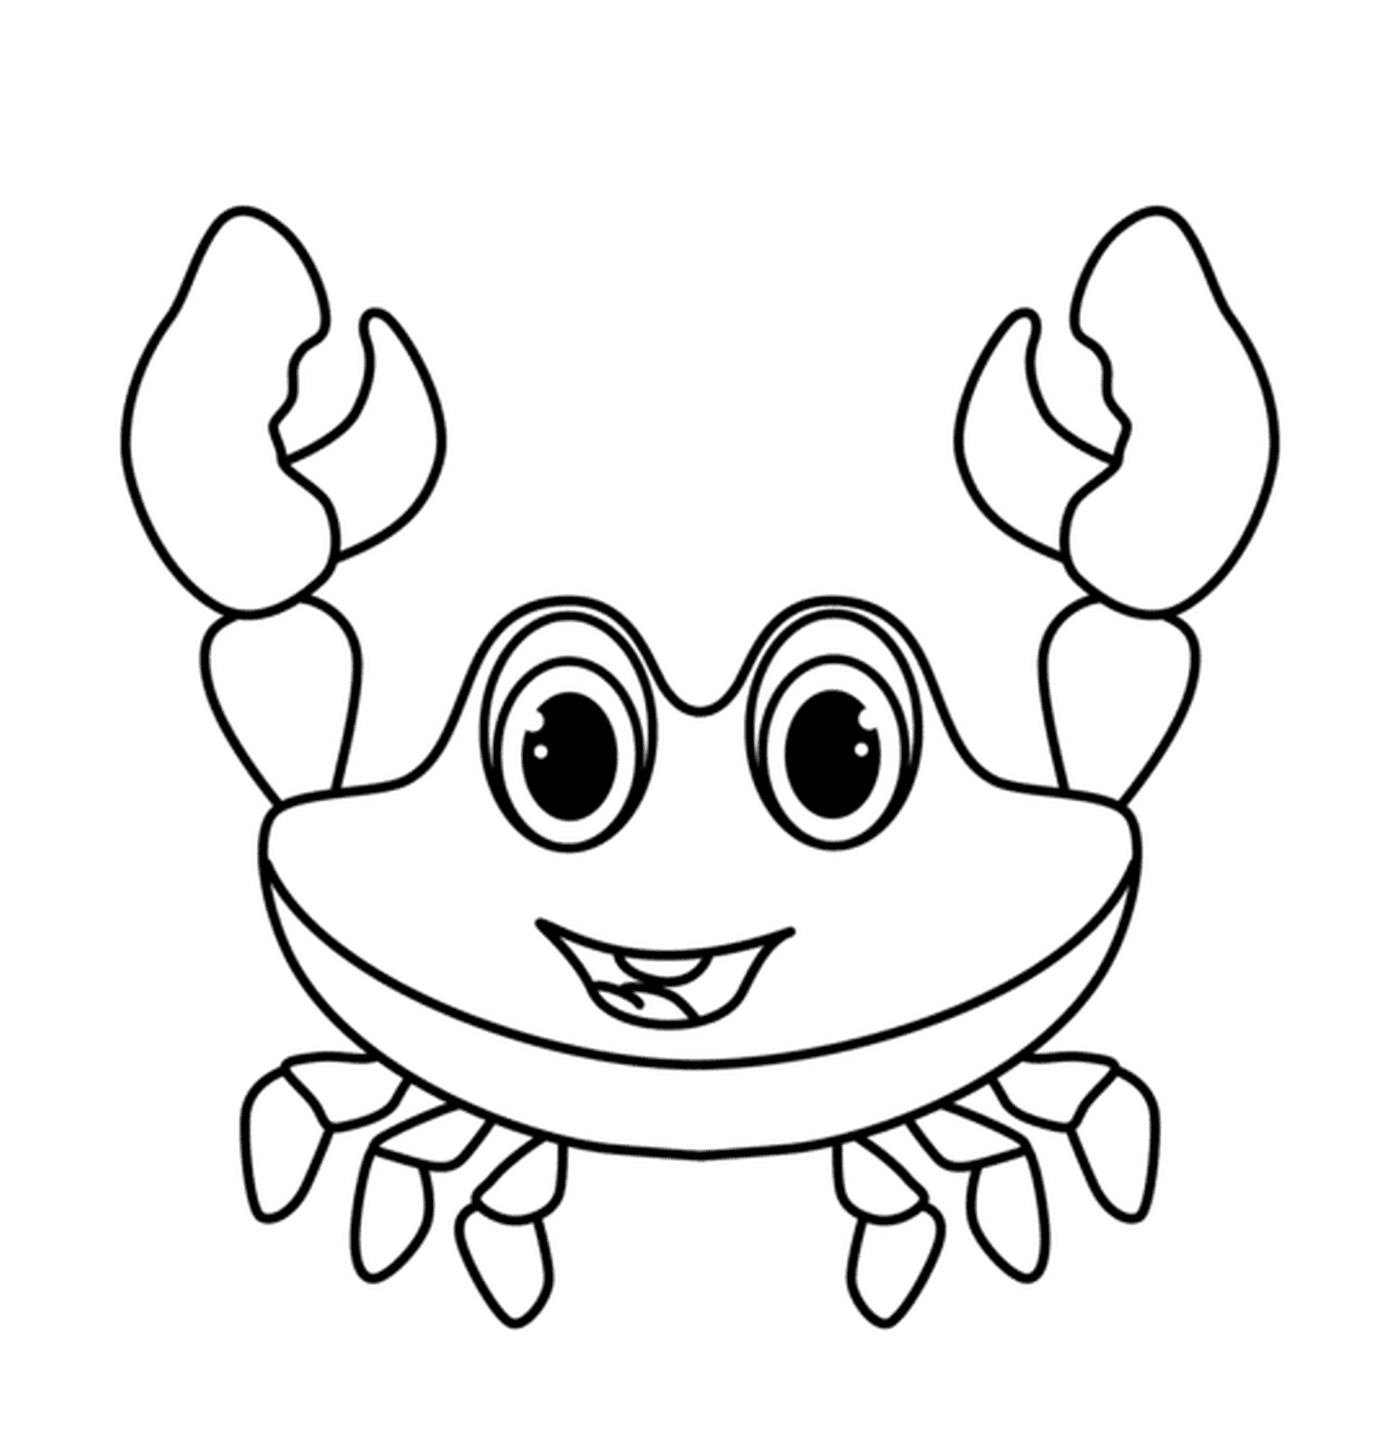  幼稚园快乐的螃蟹 